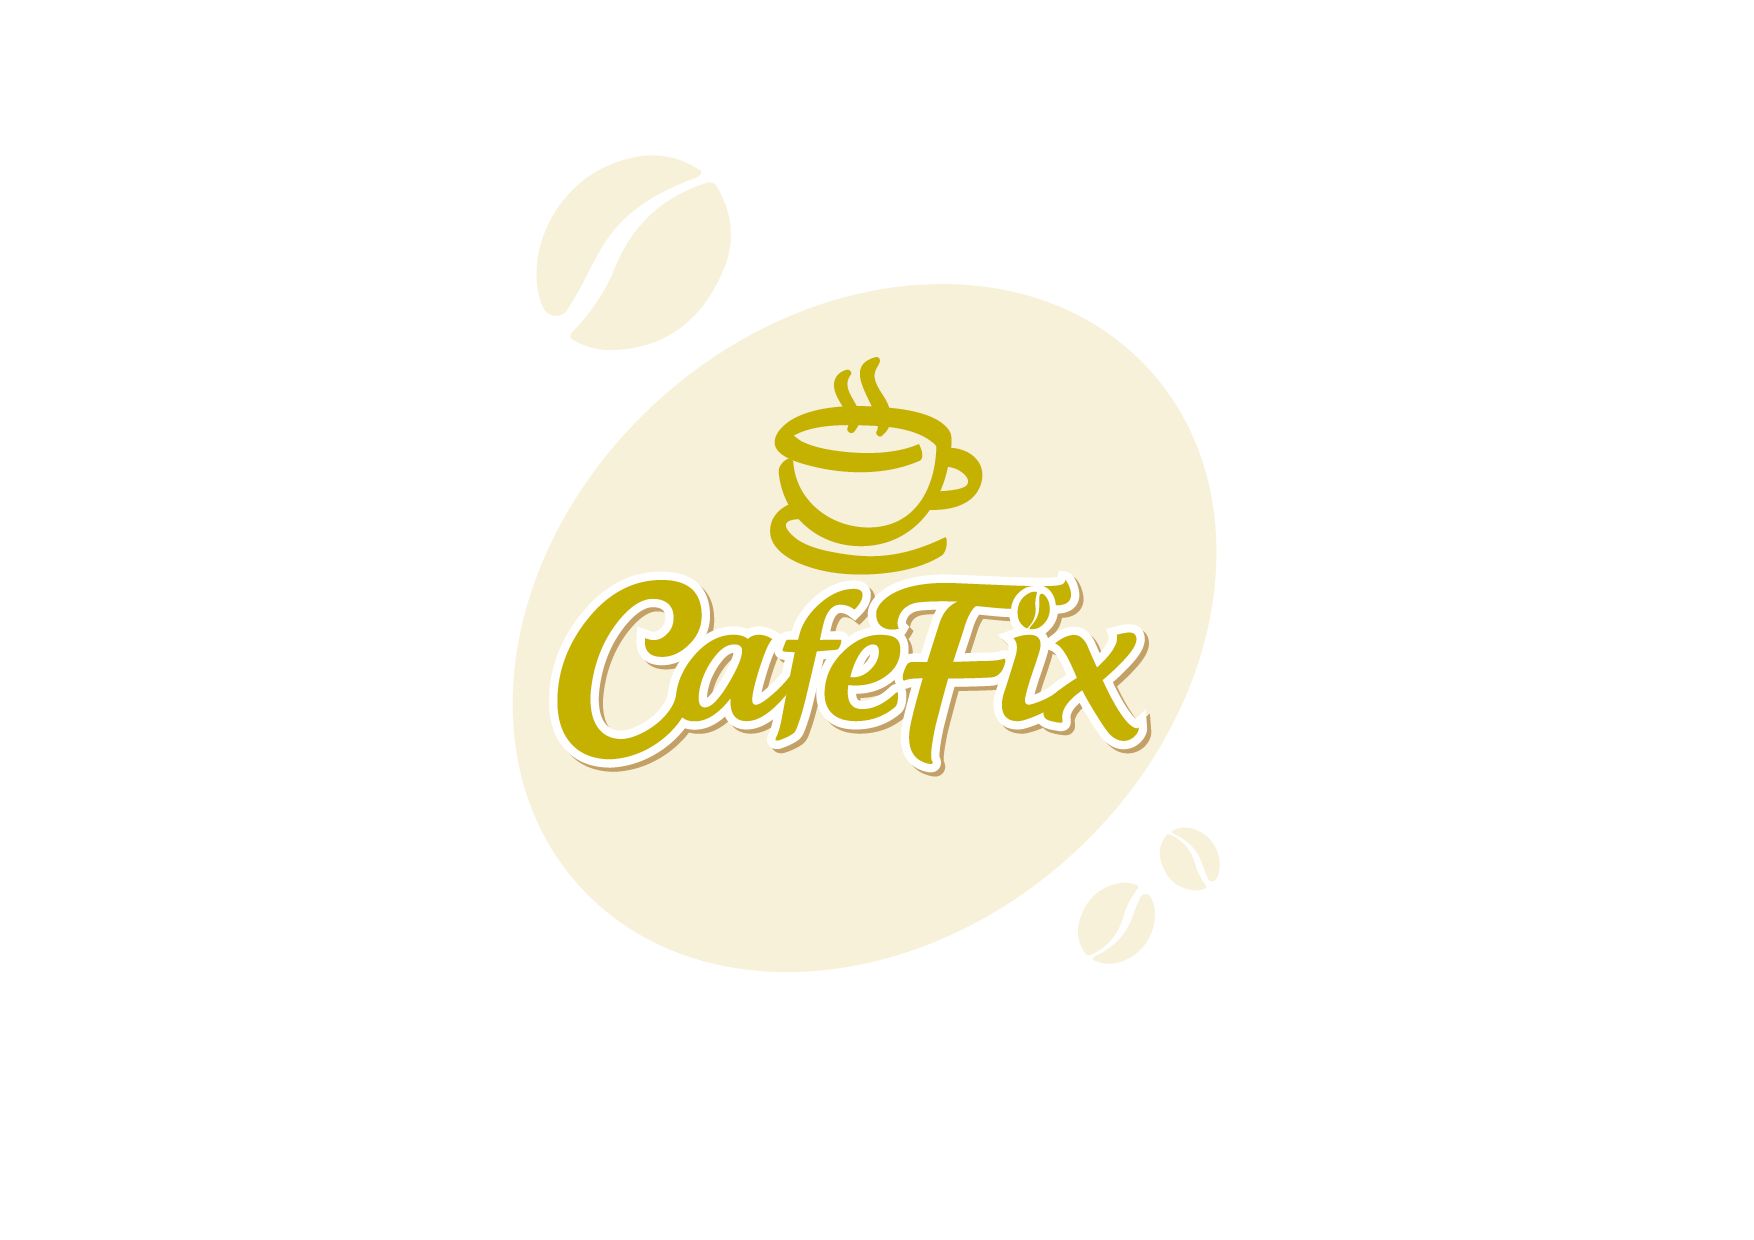 Лого и фирменный стиль для Coffee FIX - дизайнер Ula_Chu